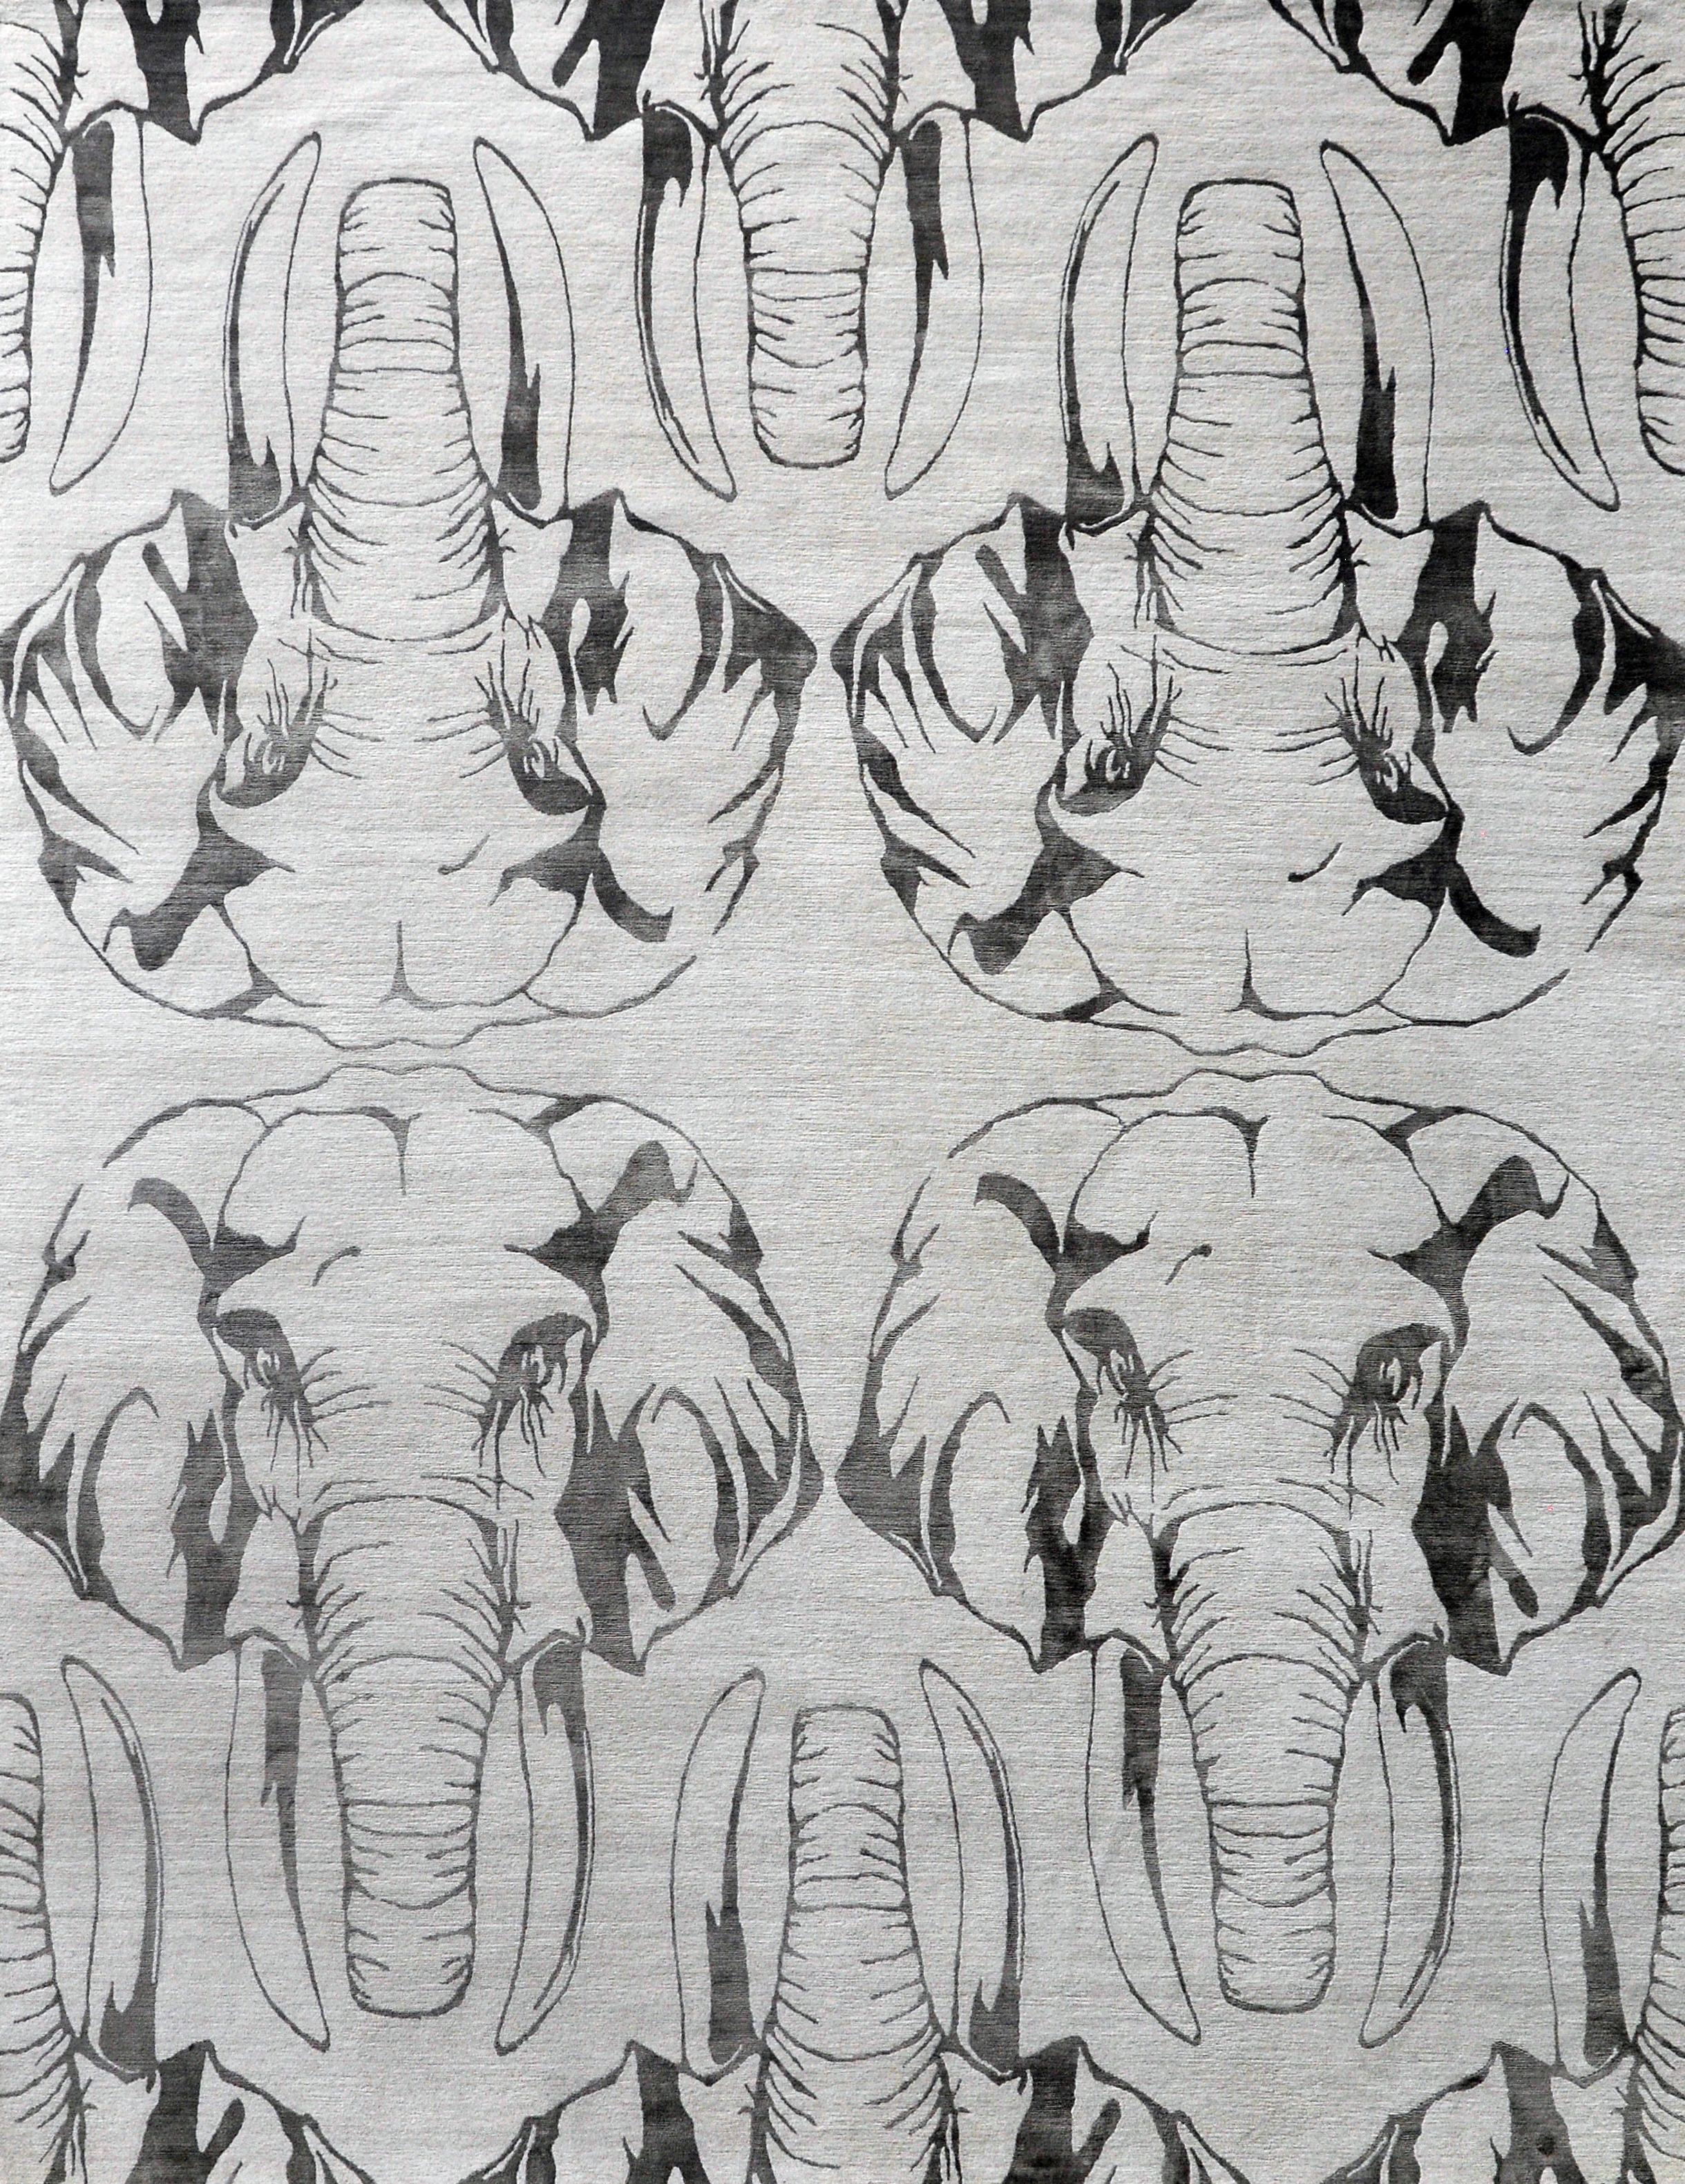 Dieser bezaubernde Teppich, der in sorgfältiger Handarbeit gefertigt wurde, zeigt eine bezaubernde Anordnung von Elefanten. Die filigrane Darstellung aus feiner Seide zeigt die majestätischen Kreaturen mit ihren Rüsseln und Büscheln. Das Ergebnis